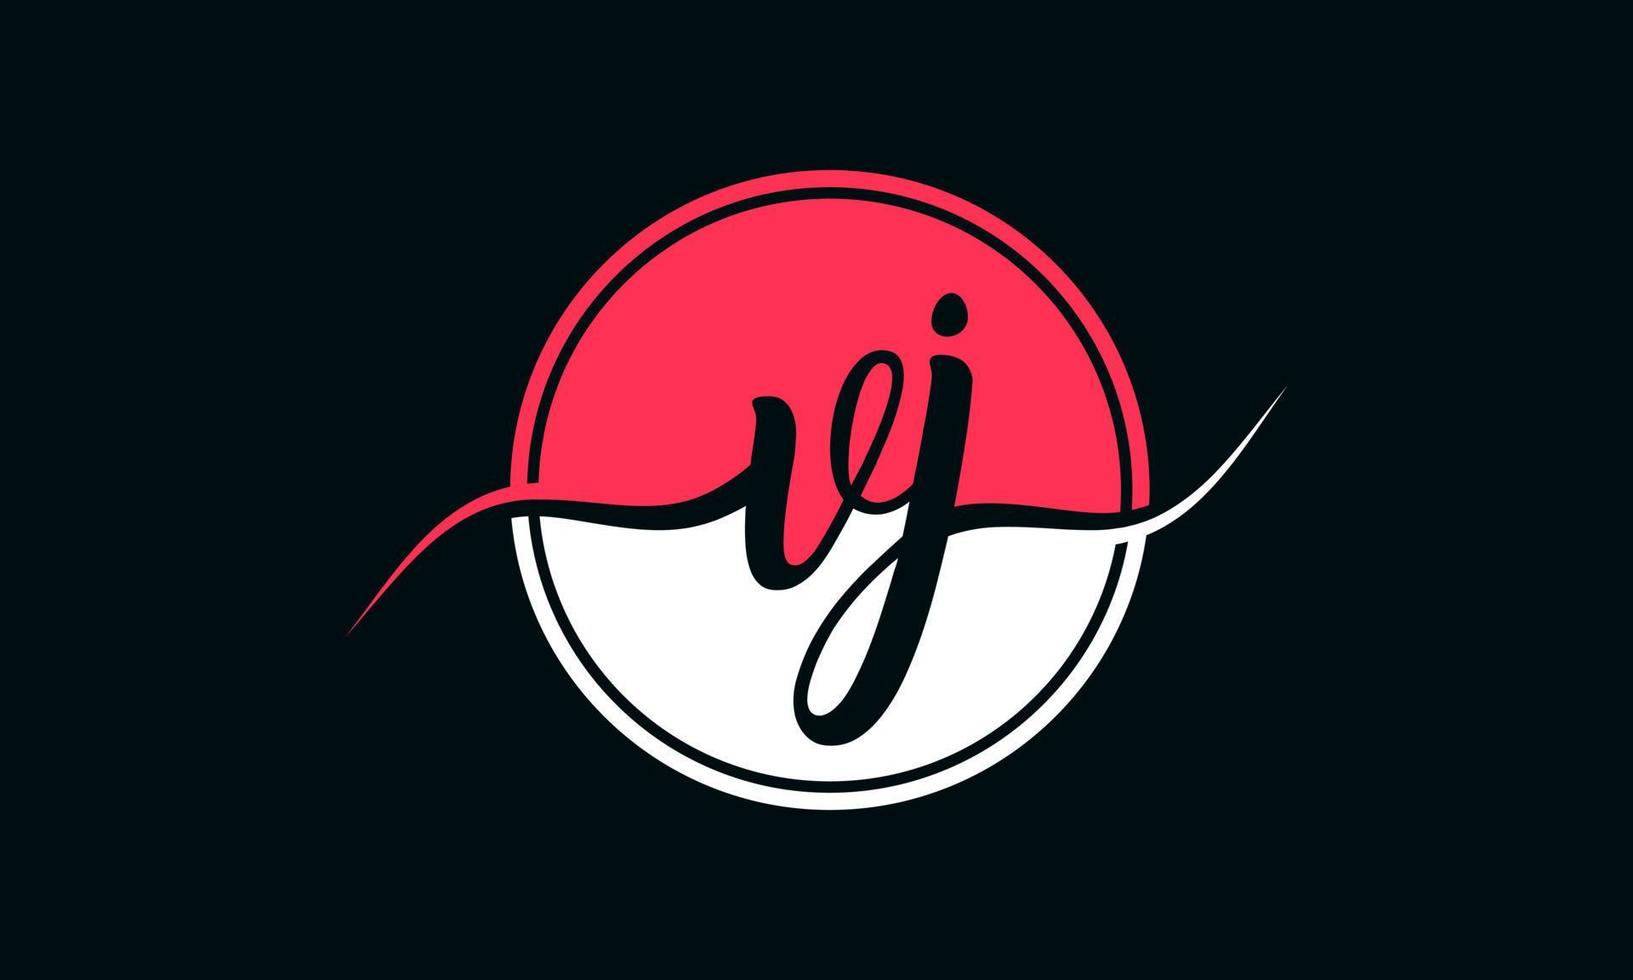 logotipo inicial da letra vj com círculo interno na cor branca e rosa. vetor profissional.